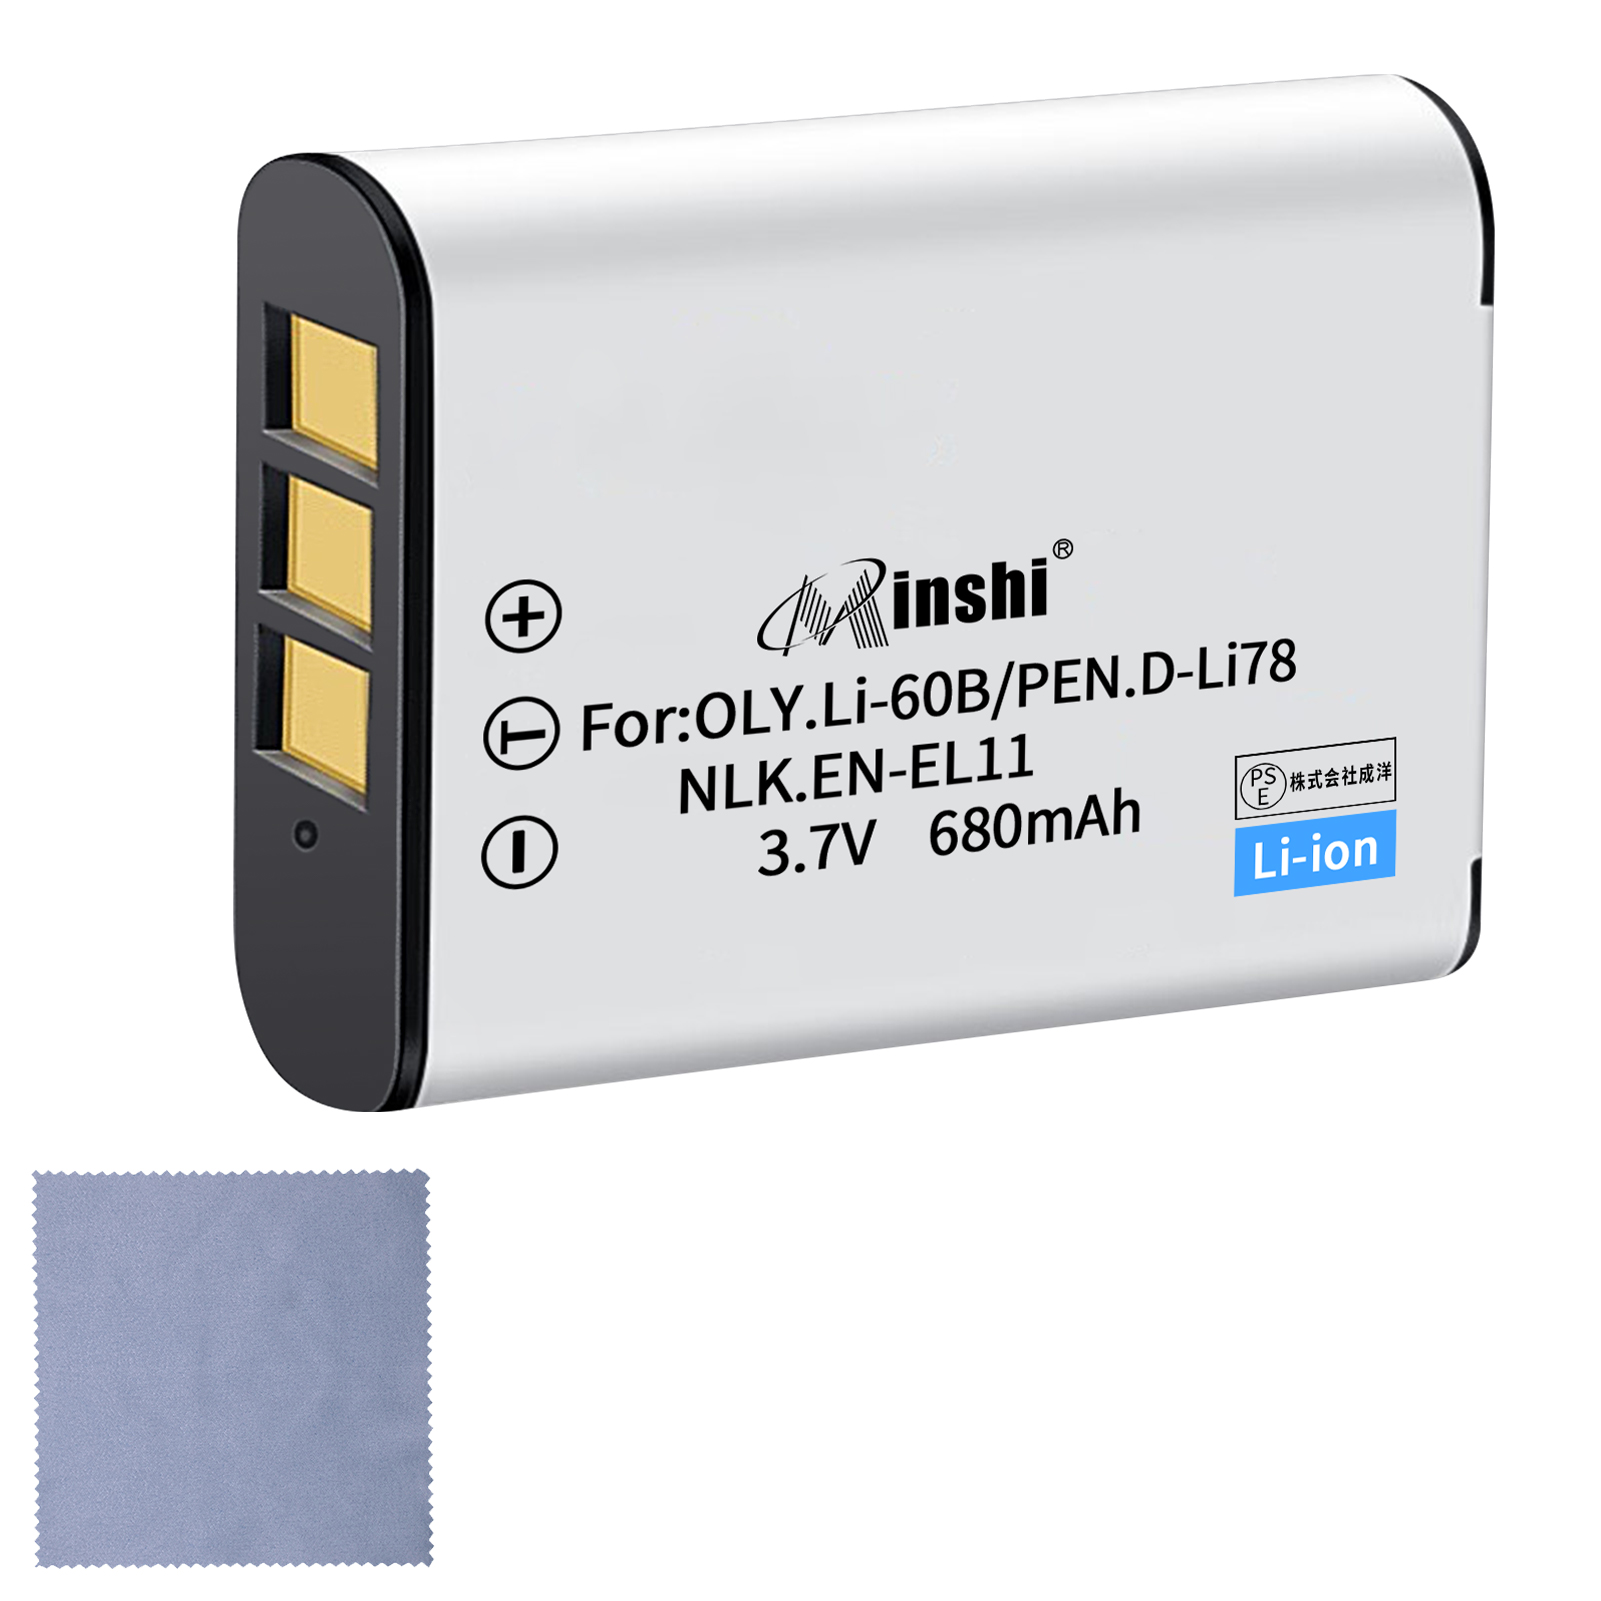 【クロス付き】minshi NIKON Xacti DMX-E10 EN-EL11 【680mAh 3.7V】PSE認定済 高品質交換用バッテリー オリジナル充電器との互換性がない